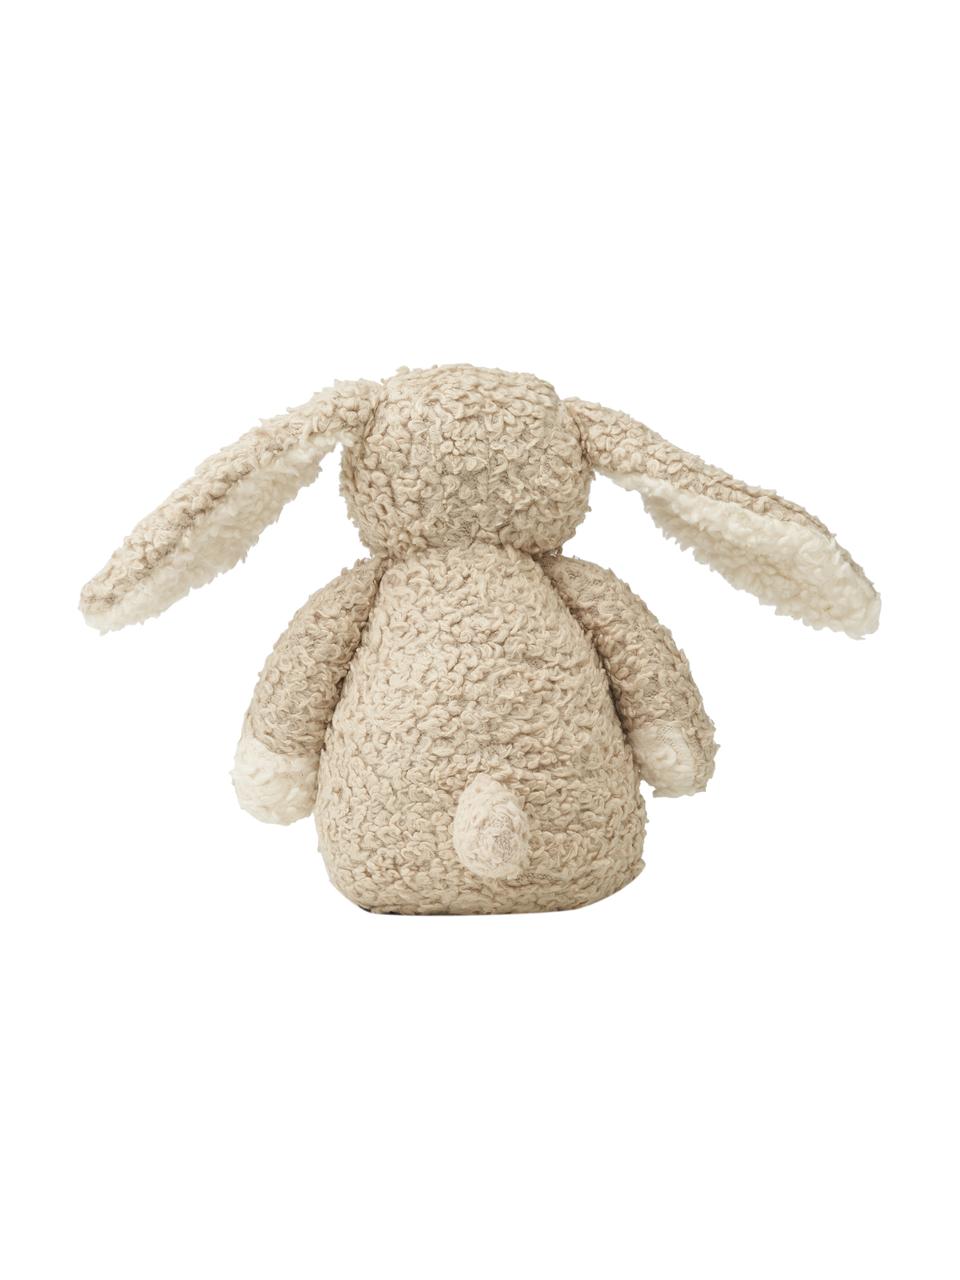 Przytulanka Riley the Rabbit, Tapicerka: 100% bawełna, Jasny beżowy, S 8 x W 15 cm